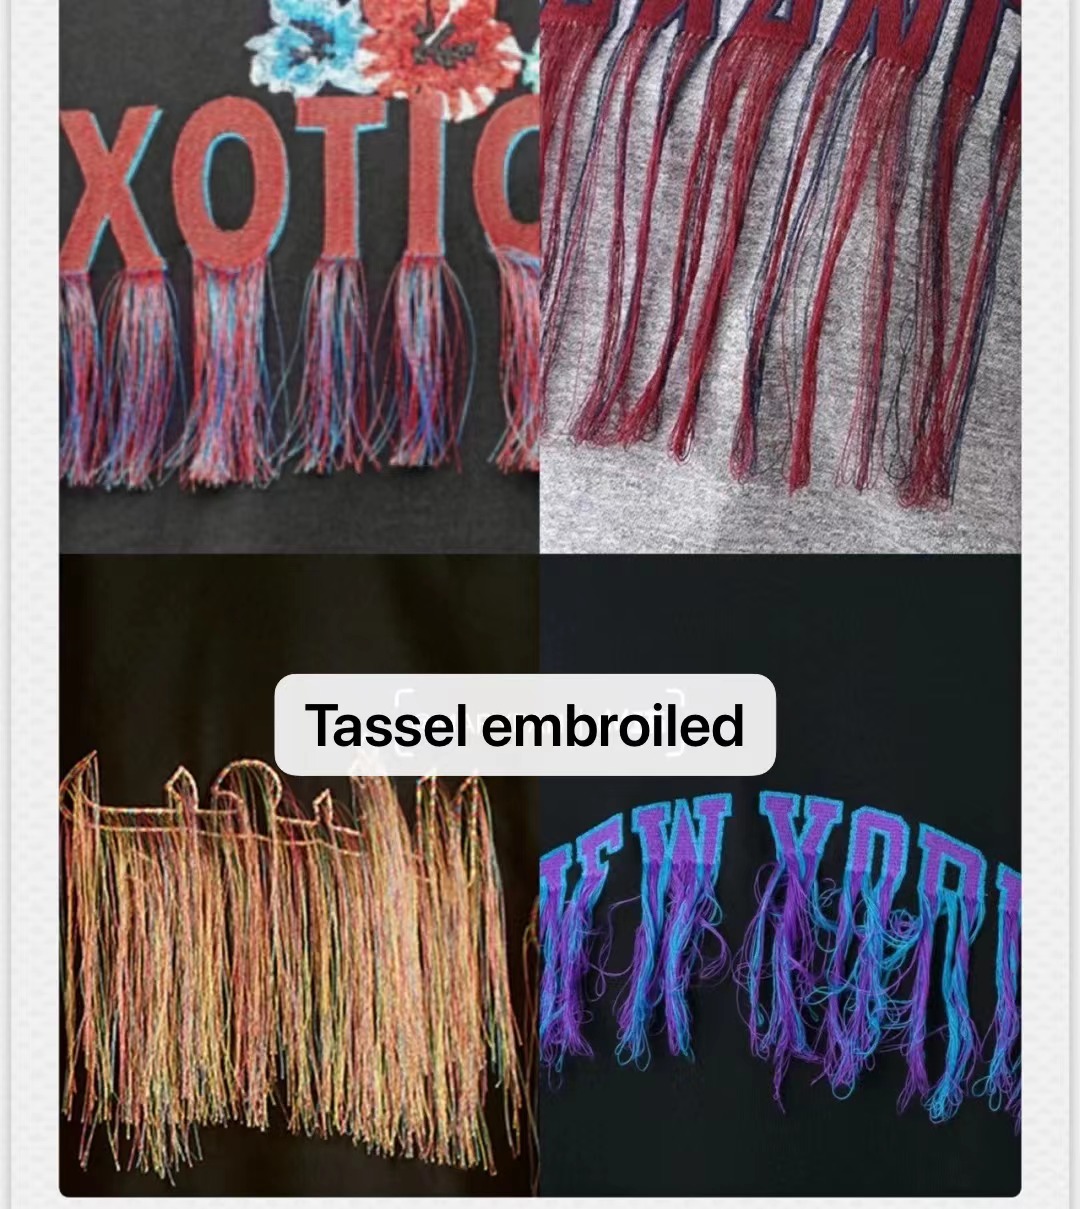 Tassel embroidery